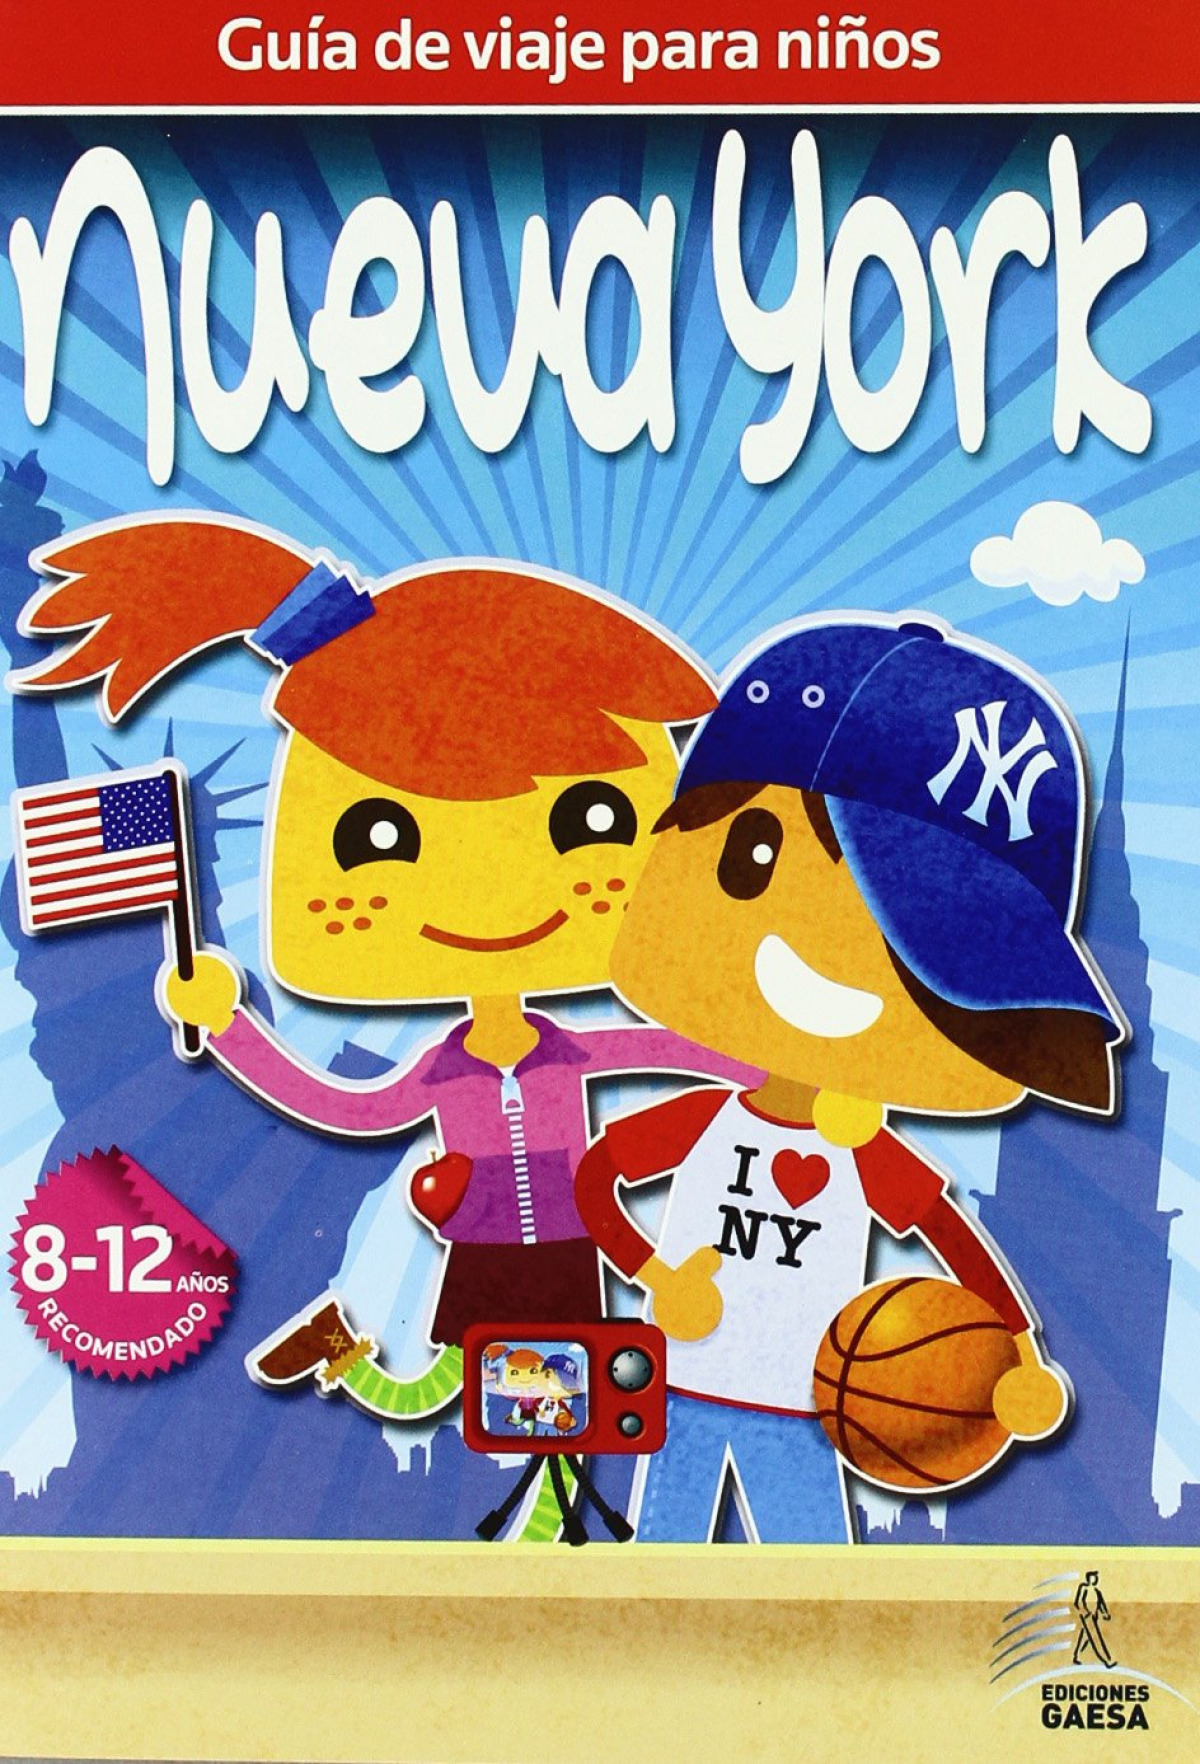 Guía de viajes para niños Nueva York - Guindel, Mario/Guindel, Francisco